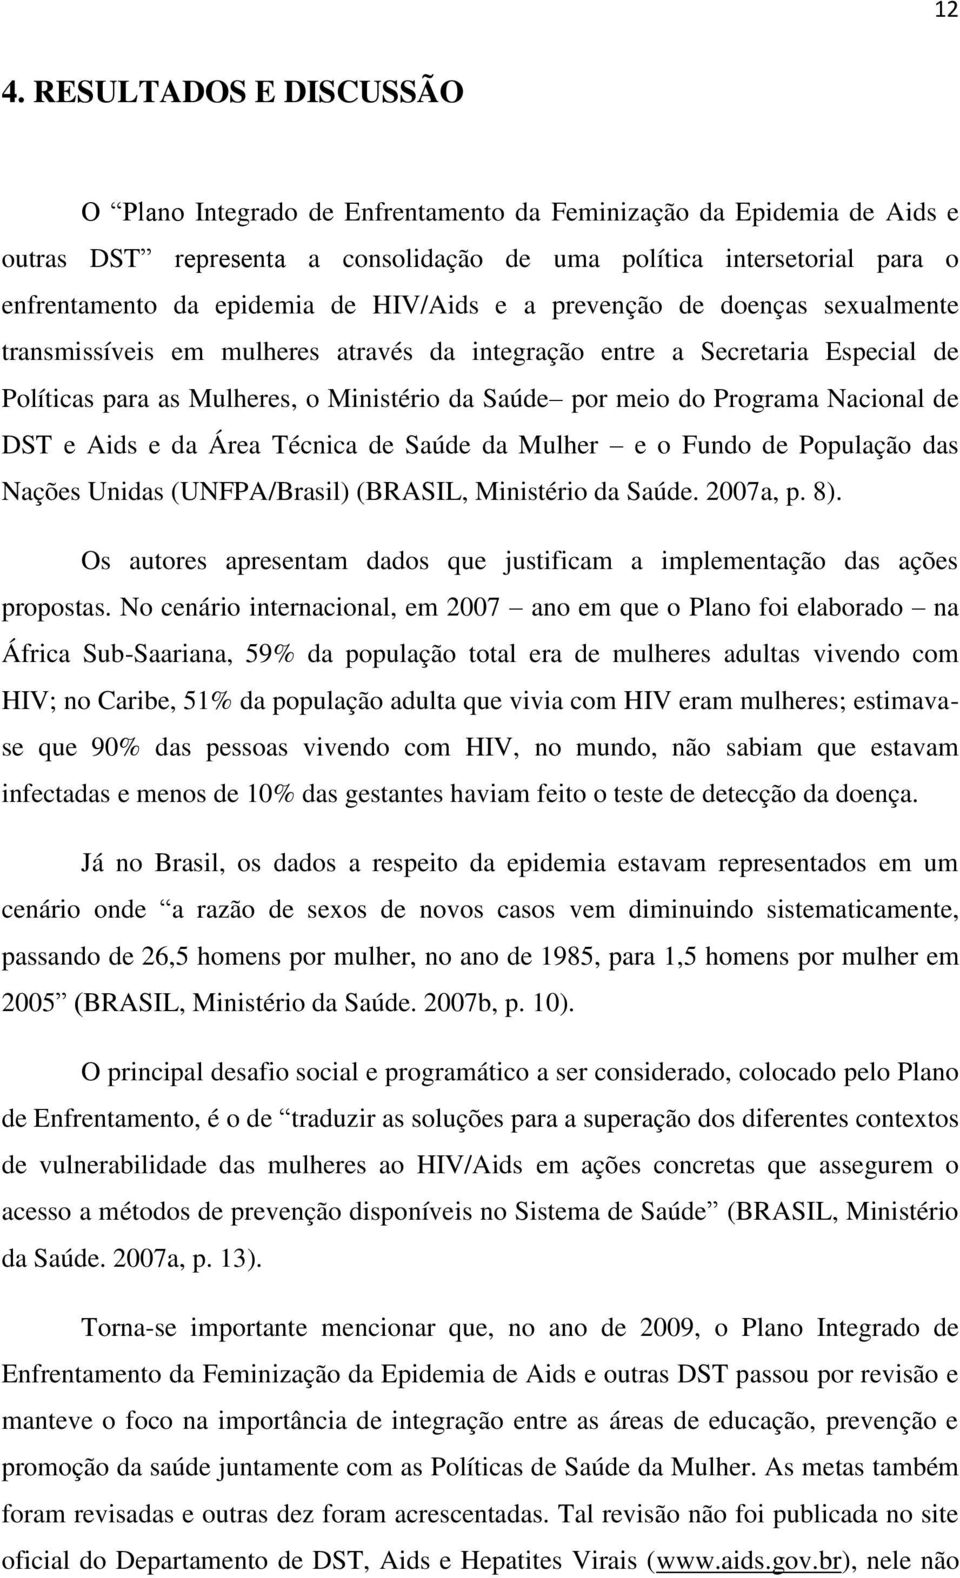 Programa Nacional de DST e Aids e da Área Técnica de Saúde da Mulher e o Fundo de População das Nações Unidas (UNFPA/Brasil) (BRASIL, Ministério da Saúde. 2007a, p. 8).